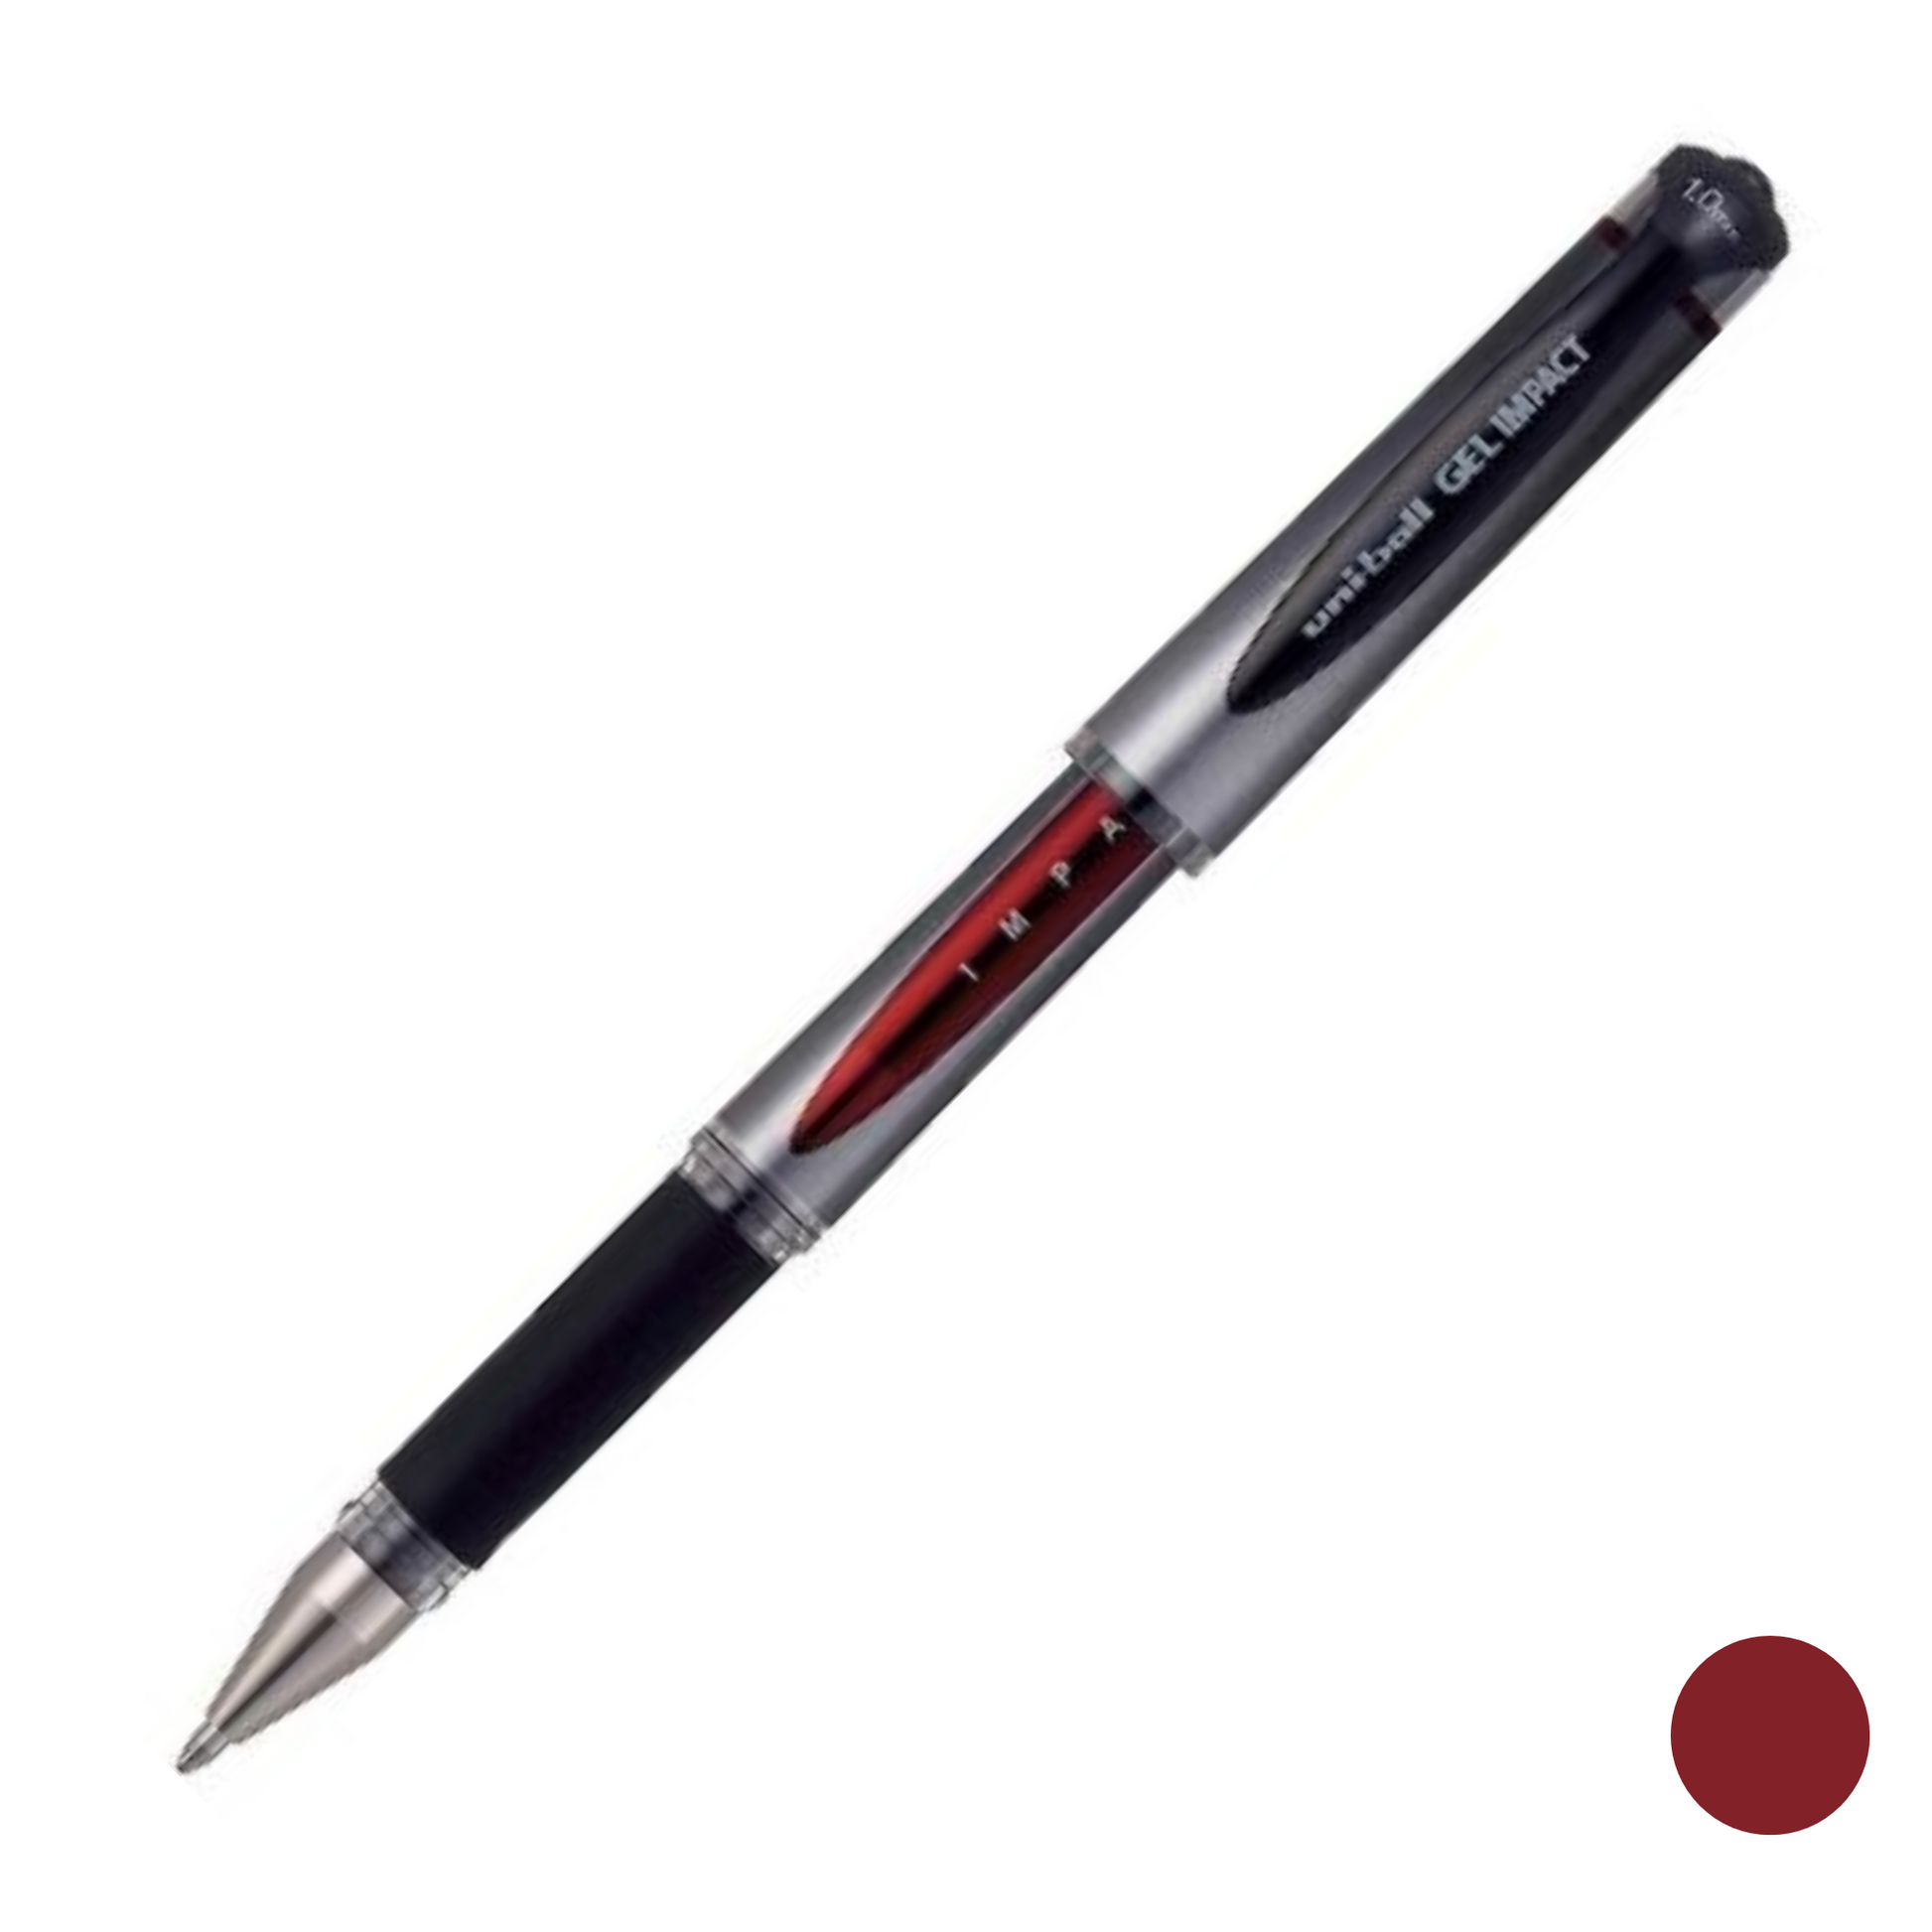 Geleroller med vannfast, blekefast og hurtigtørkende blekk. Det ultraglatte gelblekket og det solide gummigrepet gjør denne pennen til en fryd å skrive med. Farge rød.